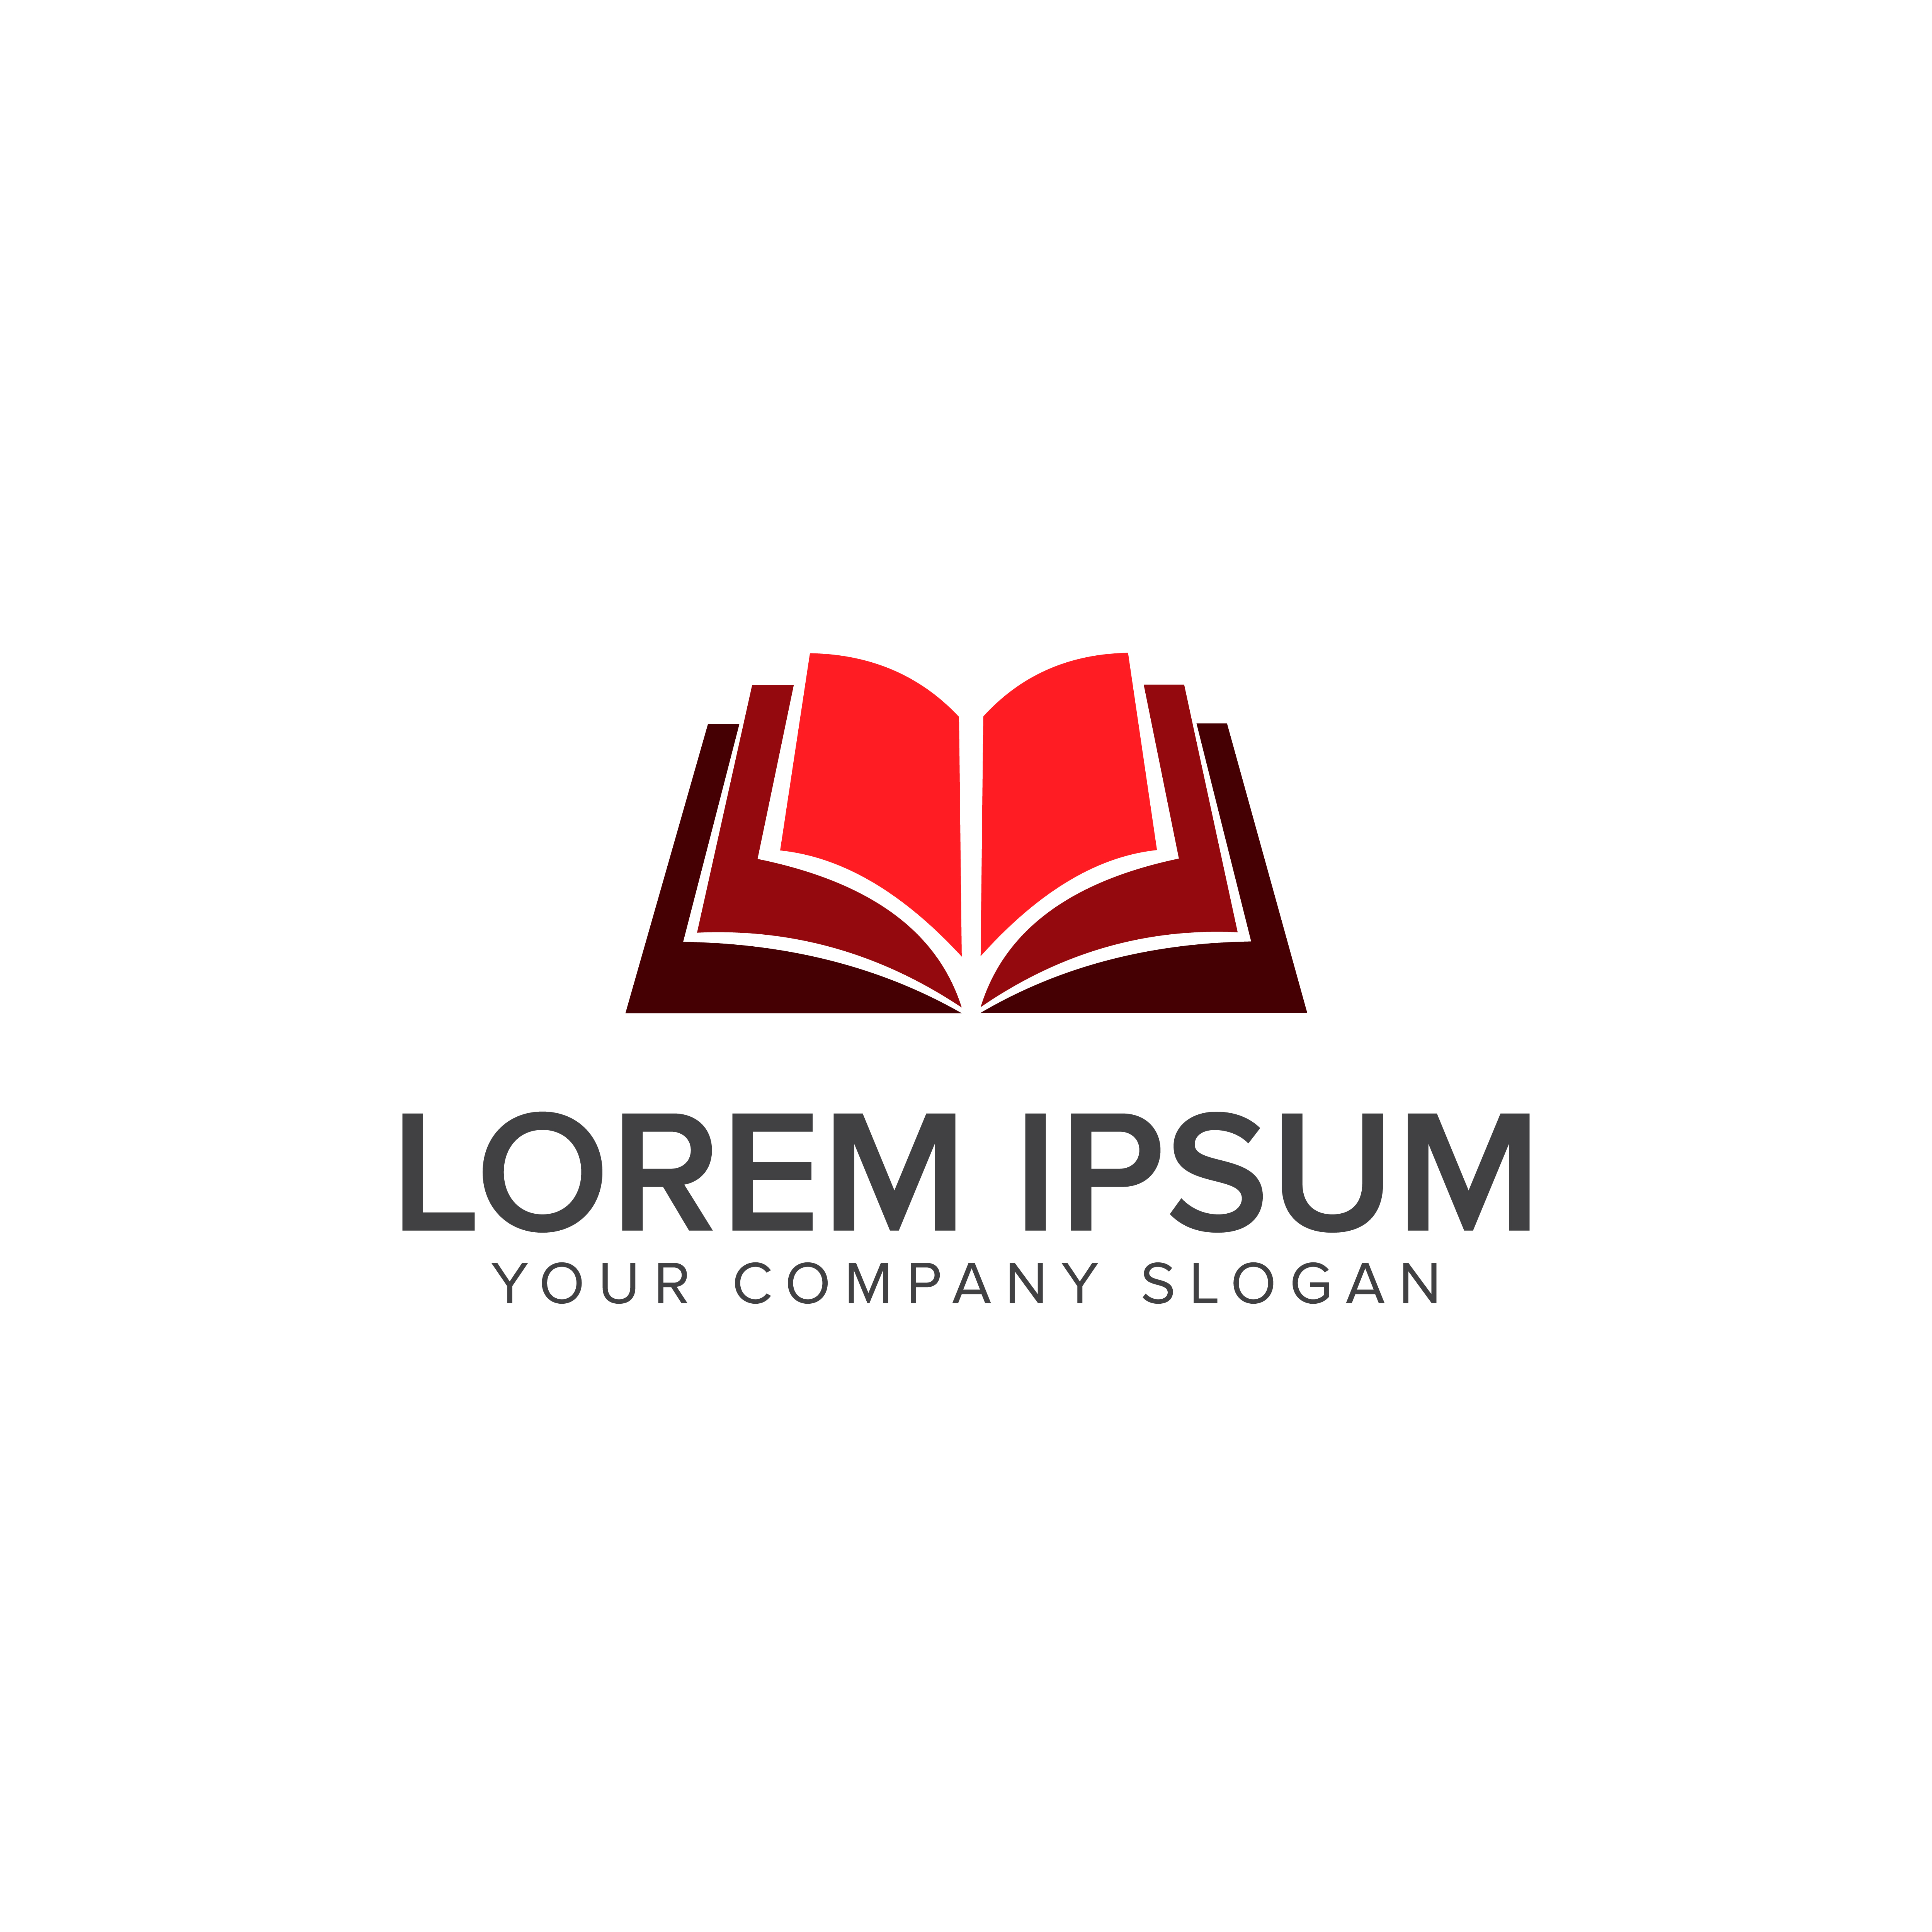  open  book  education logo  design  concept template 610762 